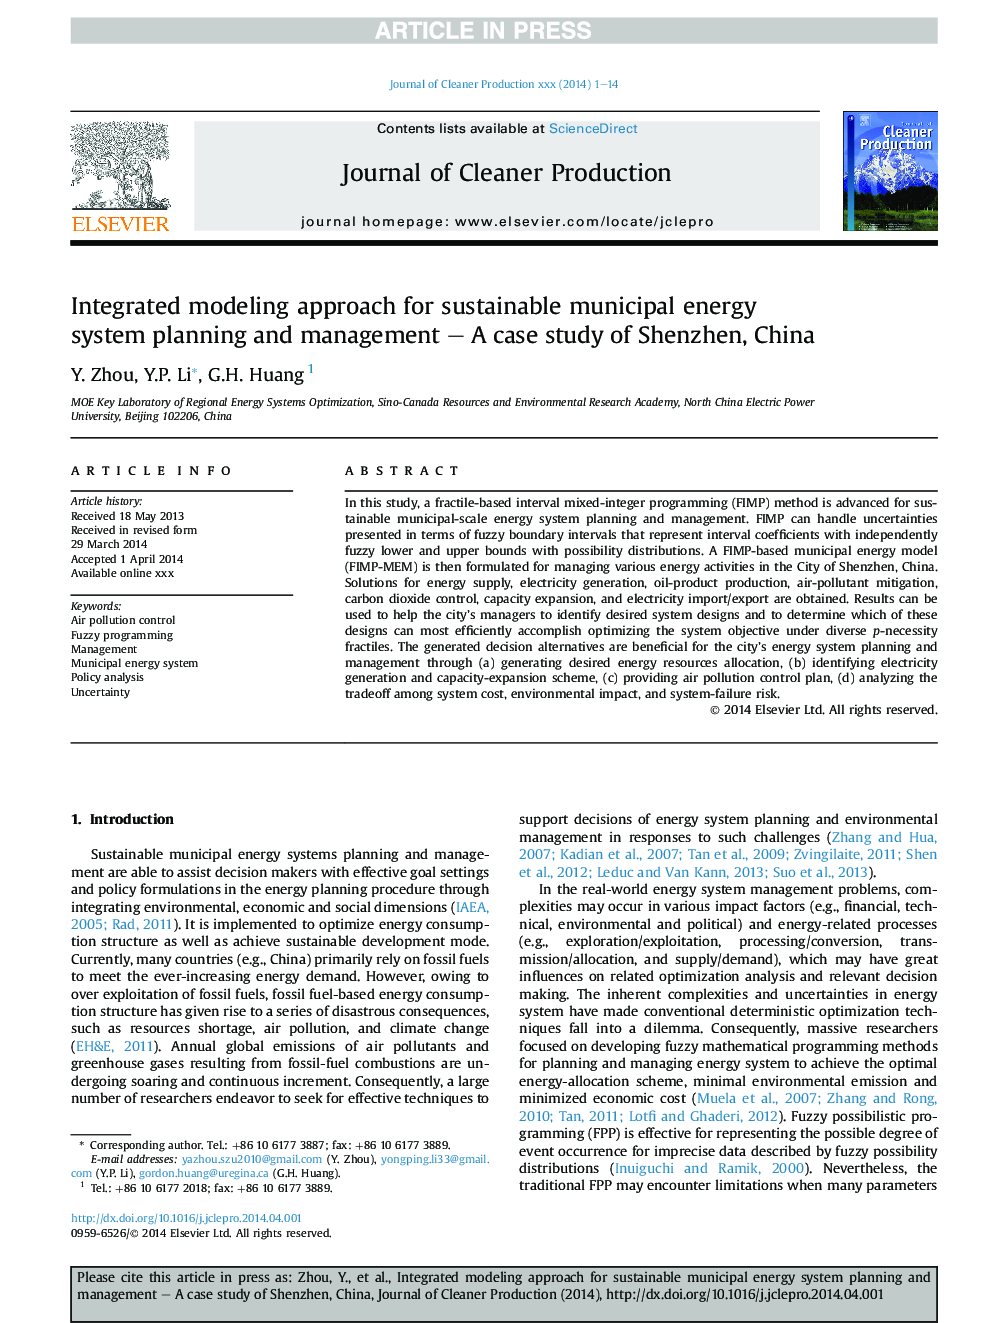 رویکرد مدل سازی یکپارچه برای برنامه ریزی و مدیریت سیستم های پایدار شهری - مطالعه موردی شنزن، چین 